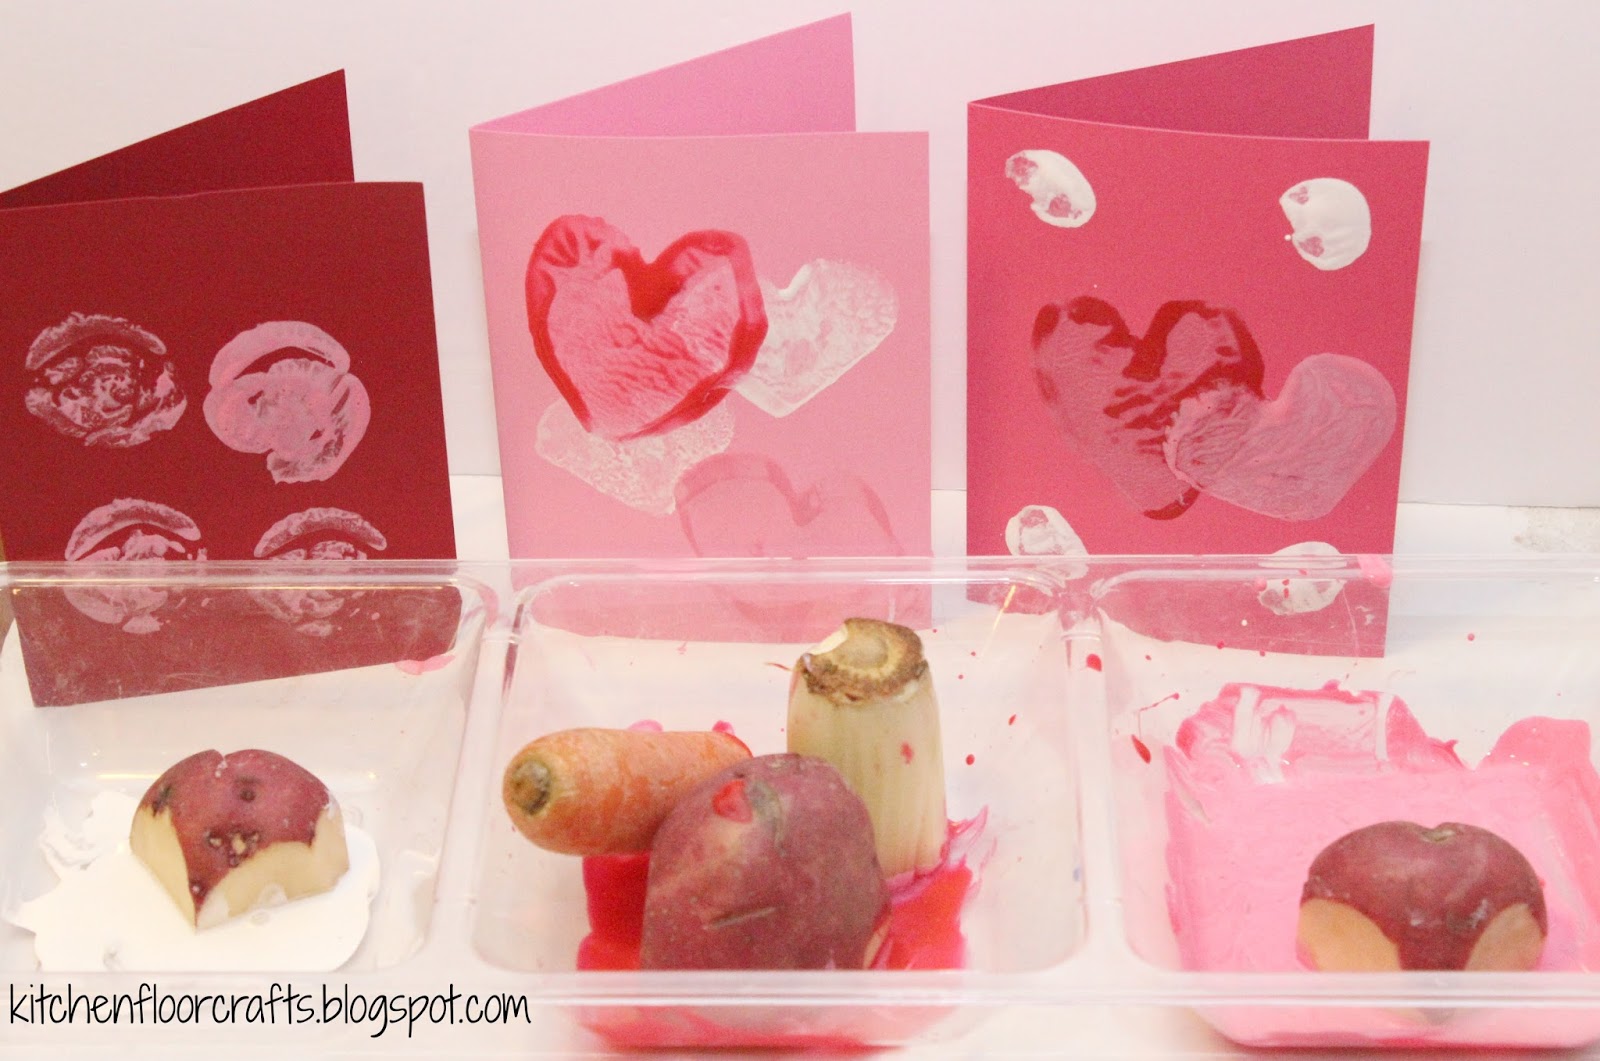 20 Best Valentine's Day Crafts & Food Ideas for Kids - Raising Veggie Lovers